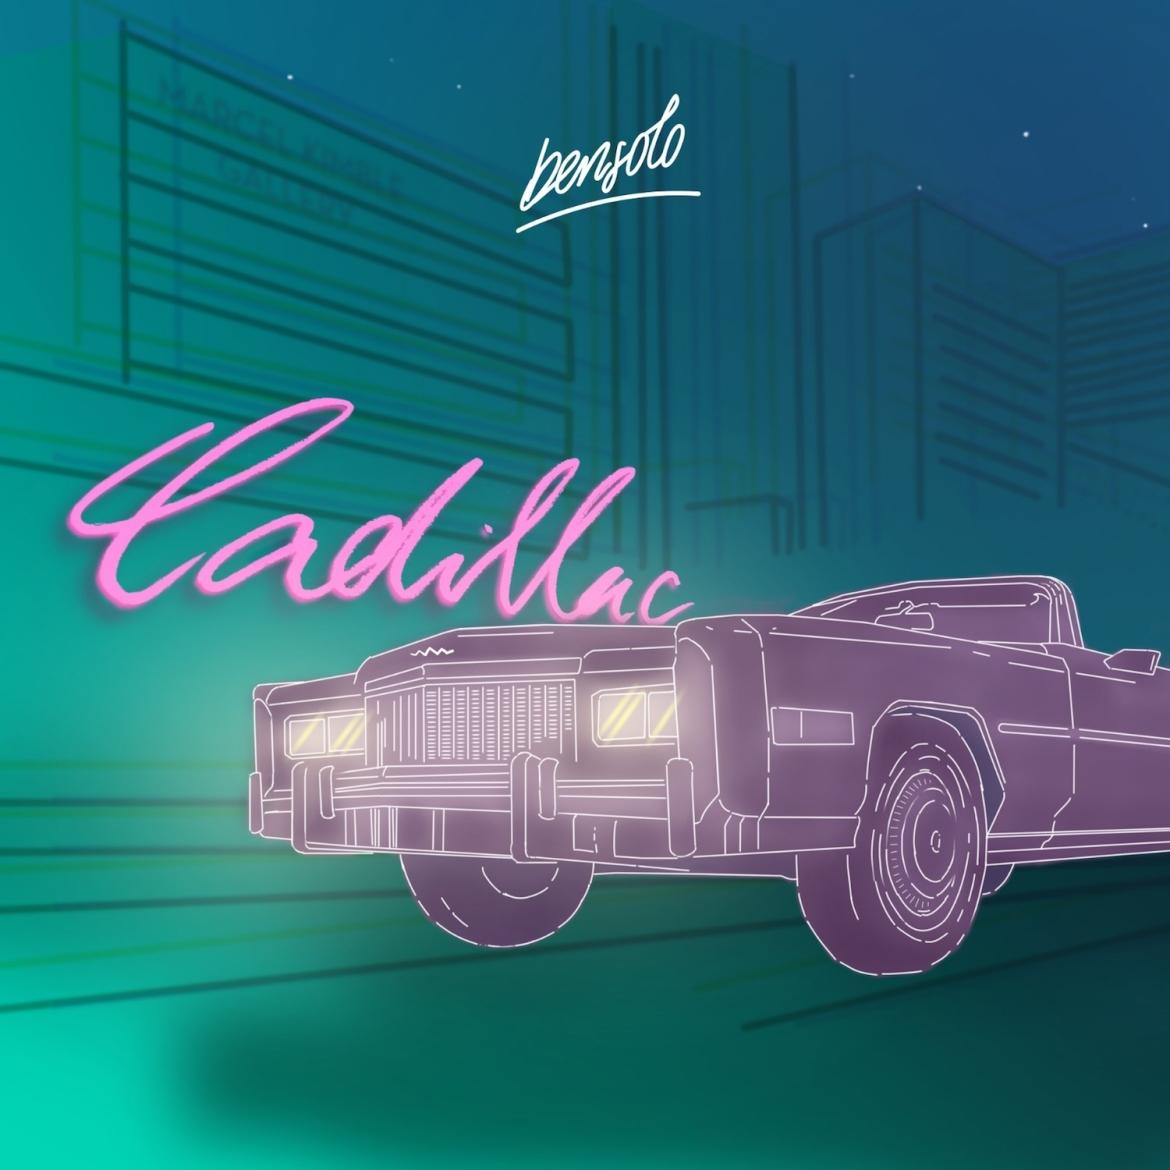 Bensolo - Cadillac